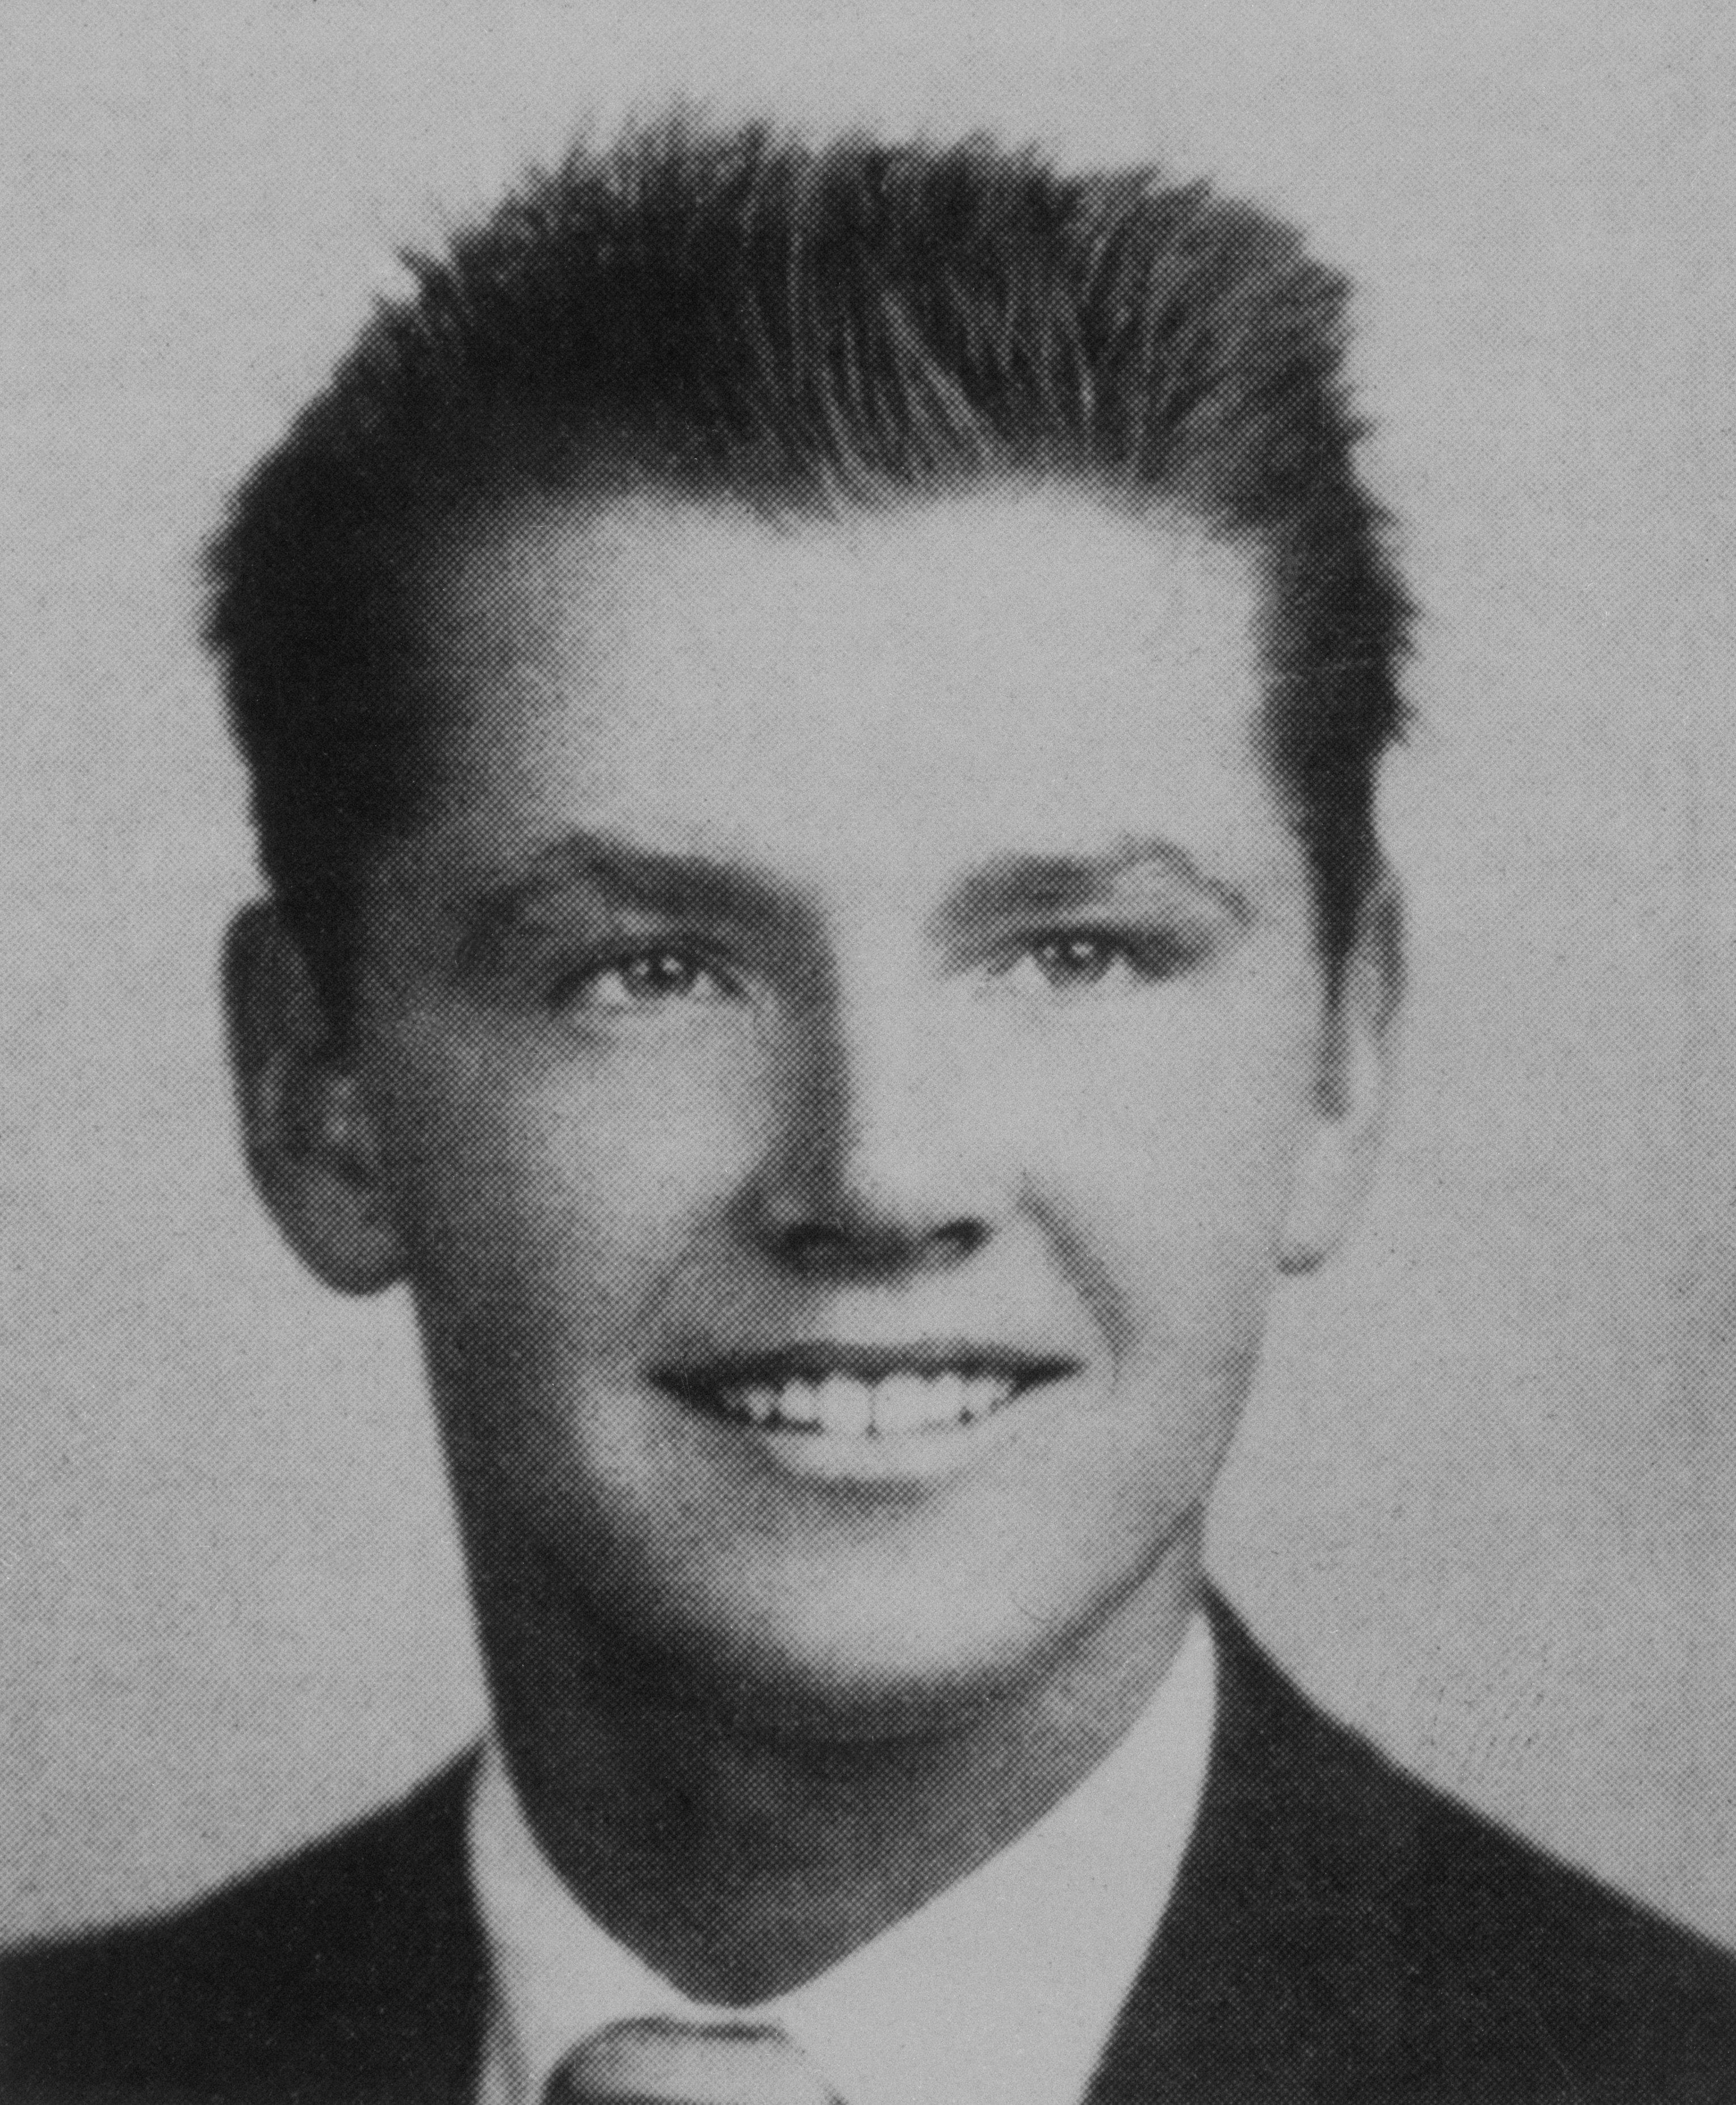 Un retrato de la escuela secundaria de Jack Nicholson, alrededor de 1955 | Foto: Getty Images